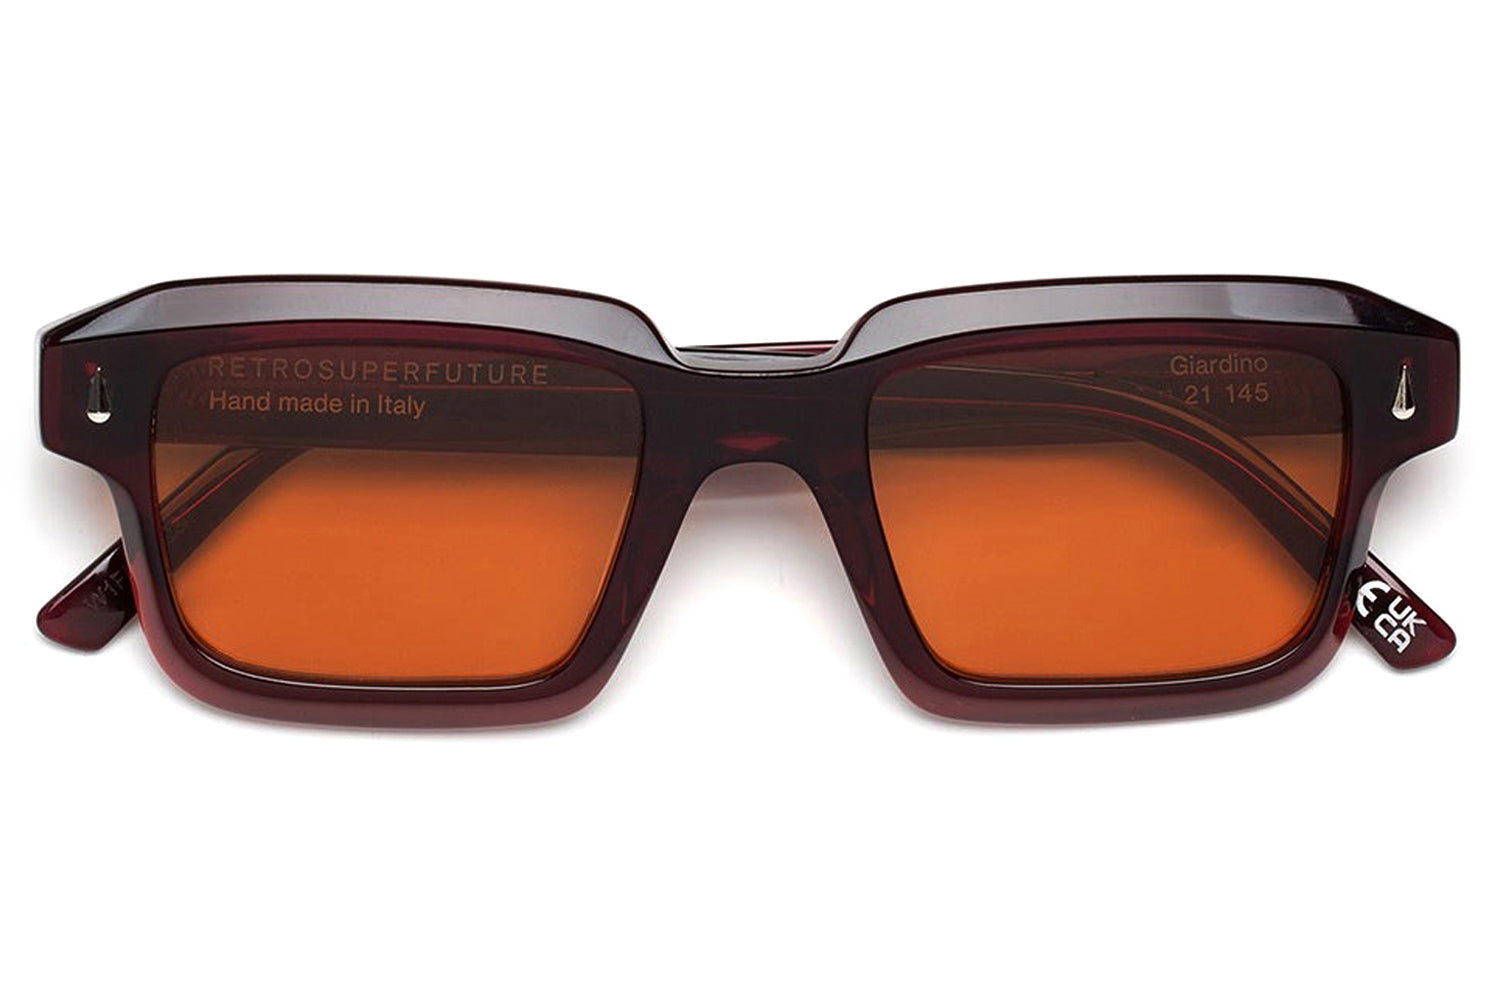 Retro Super Future® - Giardino Sunglasses | Specs Collective